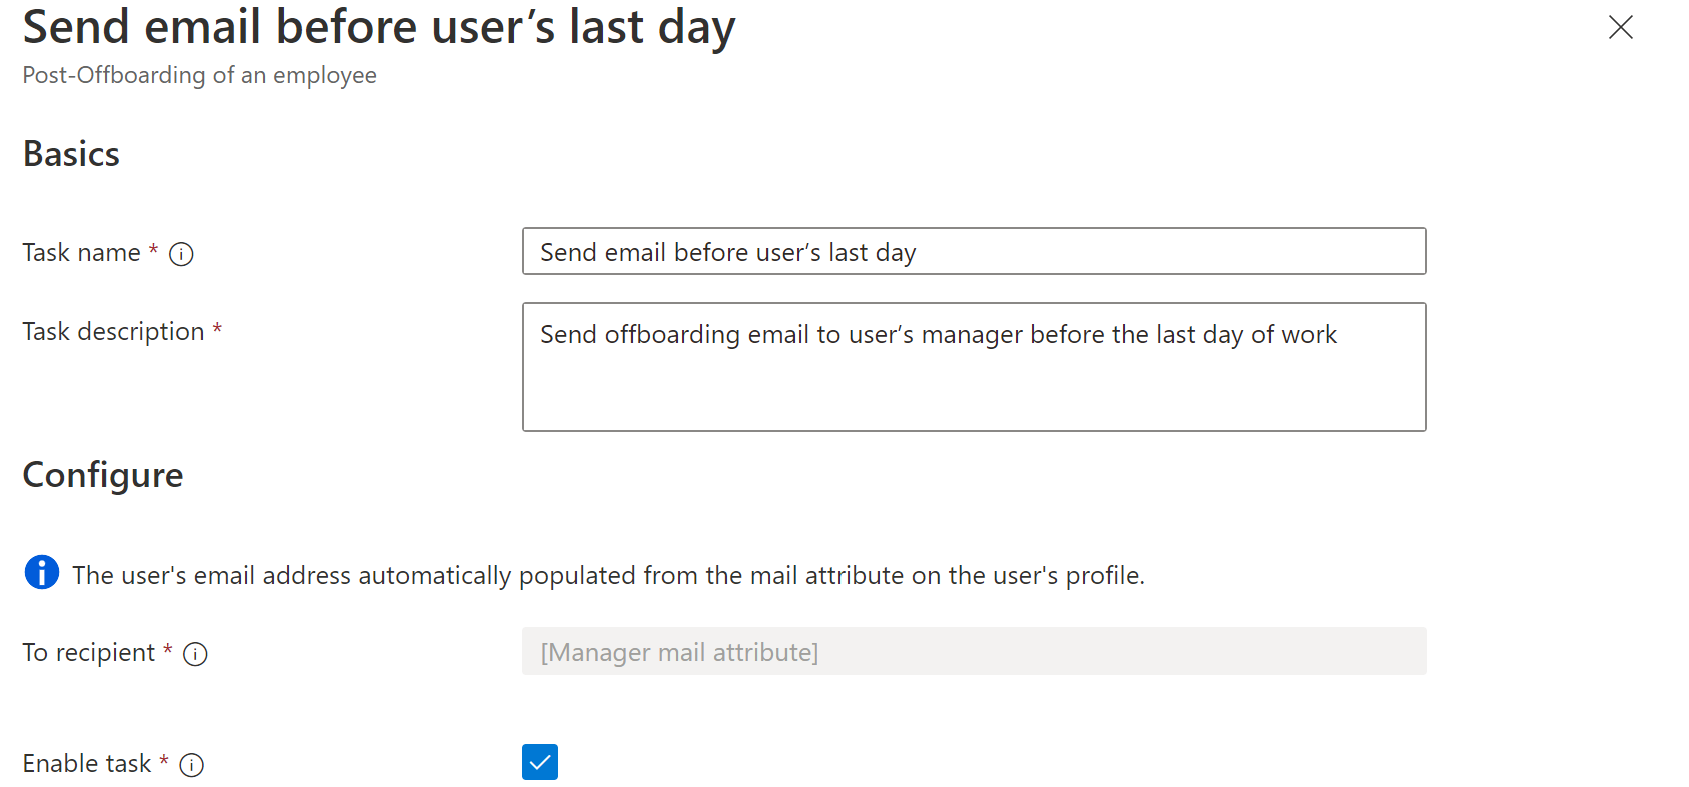 Снимок экрана задачи Workflows: задача отправки сообщения электронной почты перед последним днем работы пользователя.